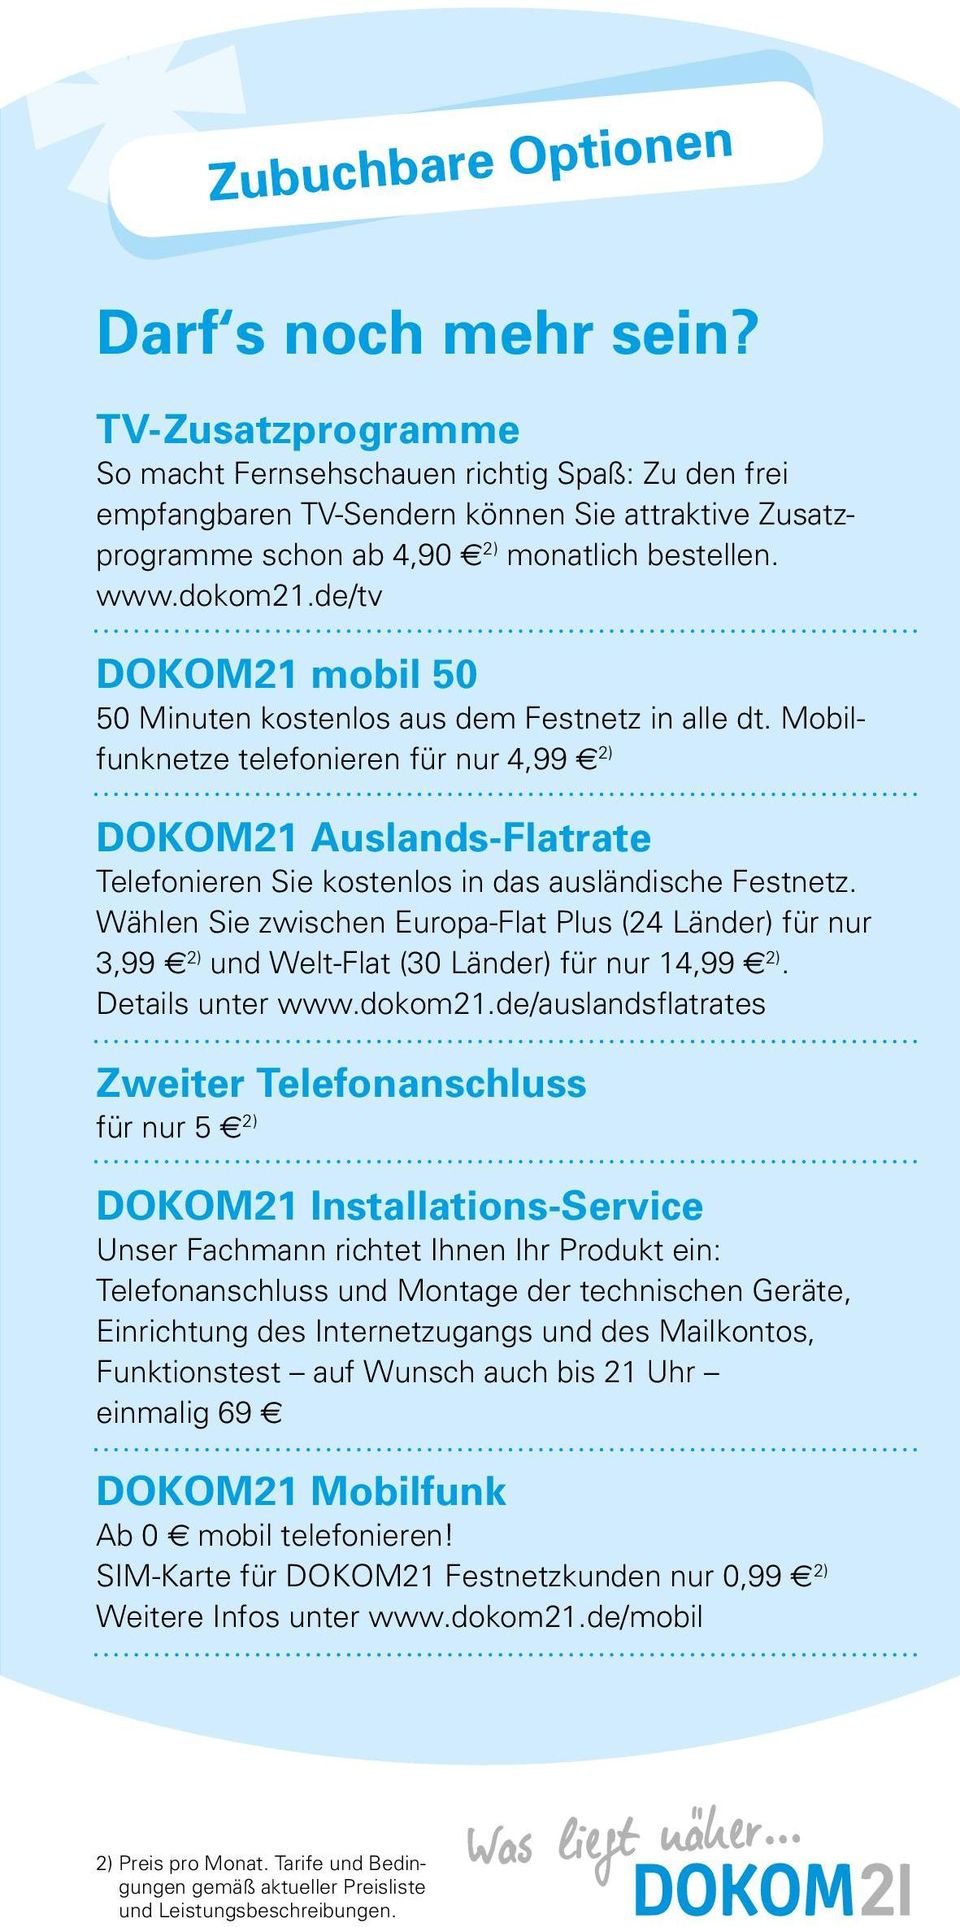 de/tv DOKOM21 mobil 50 50 Minuten kostenlos aus dem Festnetz in alle dt. Mobilfunknetze telefonieren für nur 4,99 2) DOKOM21 Auslands-Flatrate Telefonieren Sie kostenlos in das ausländische Festnetz.